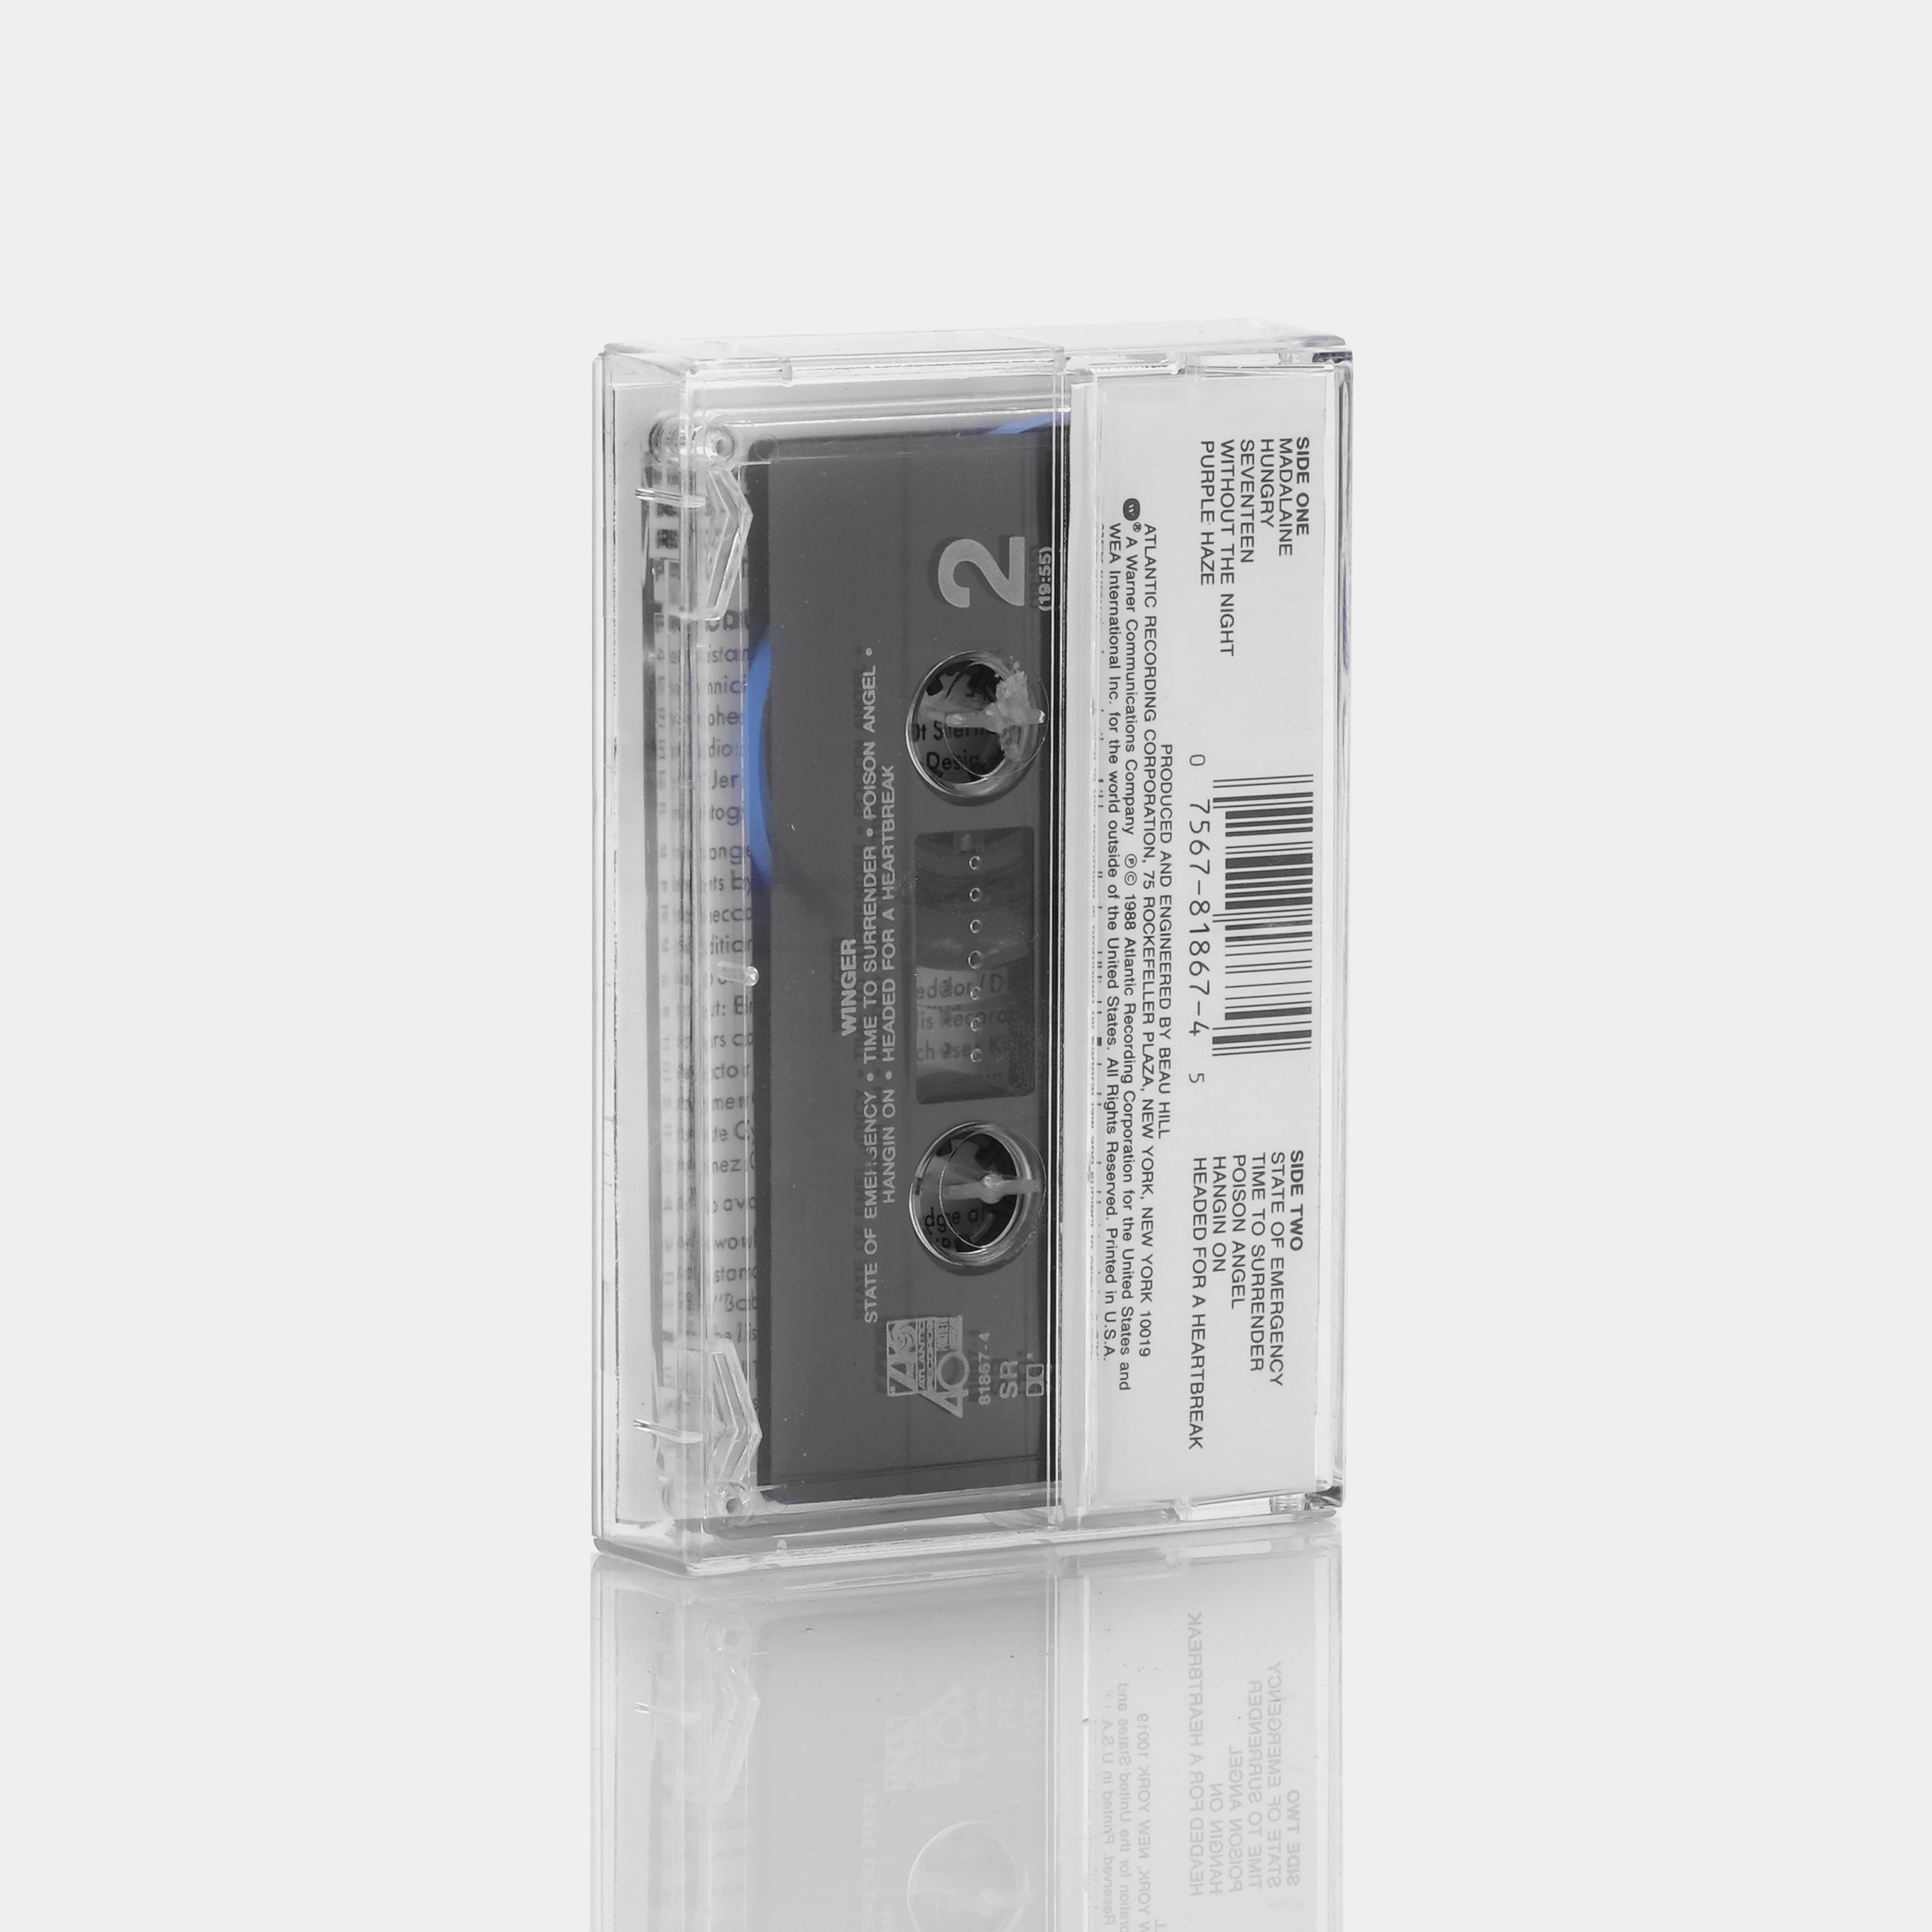 Winger - Winger Cassette Tape